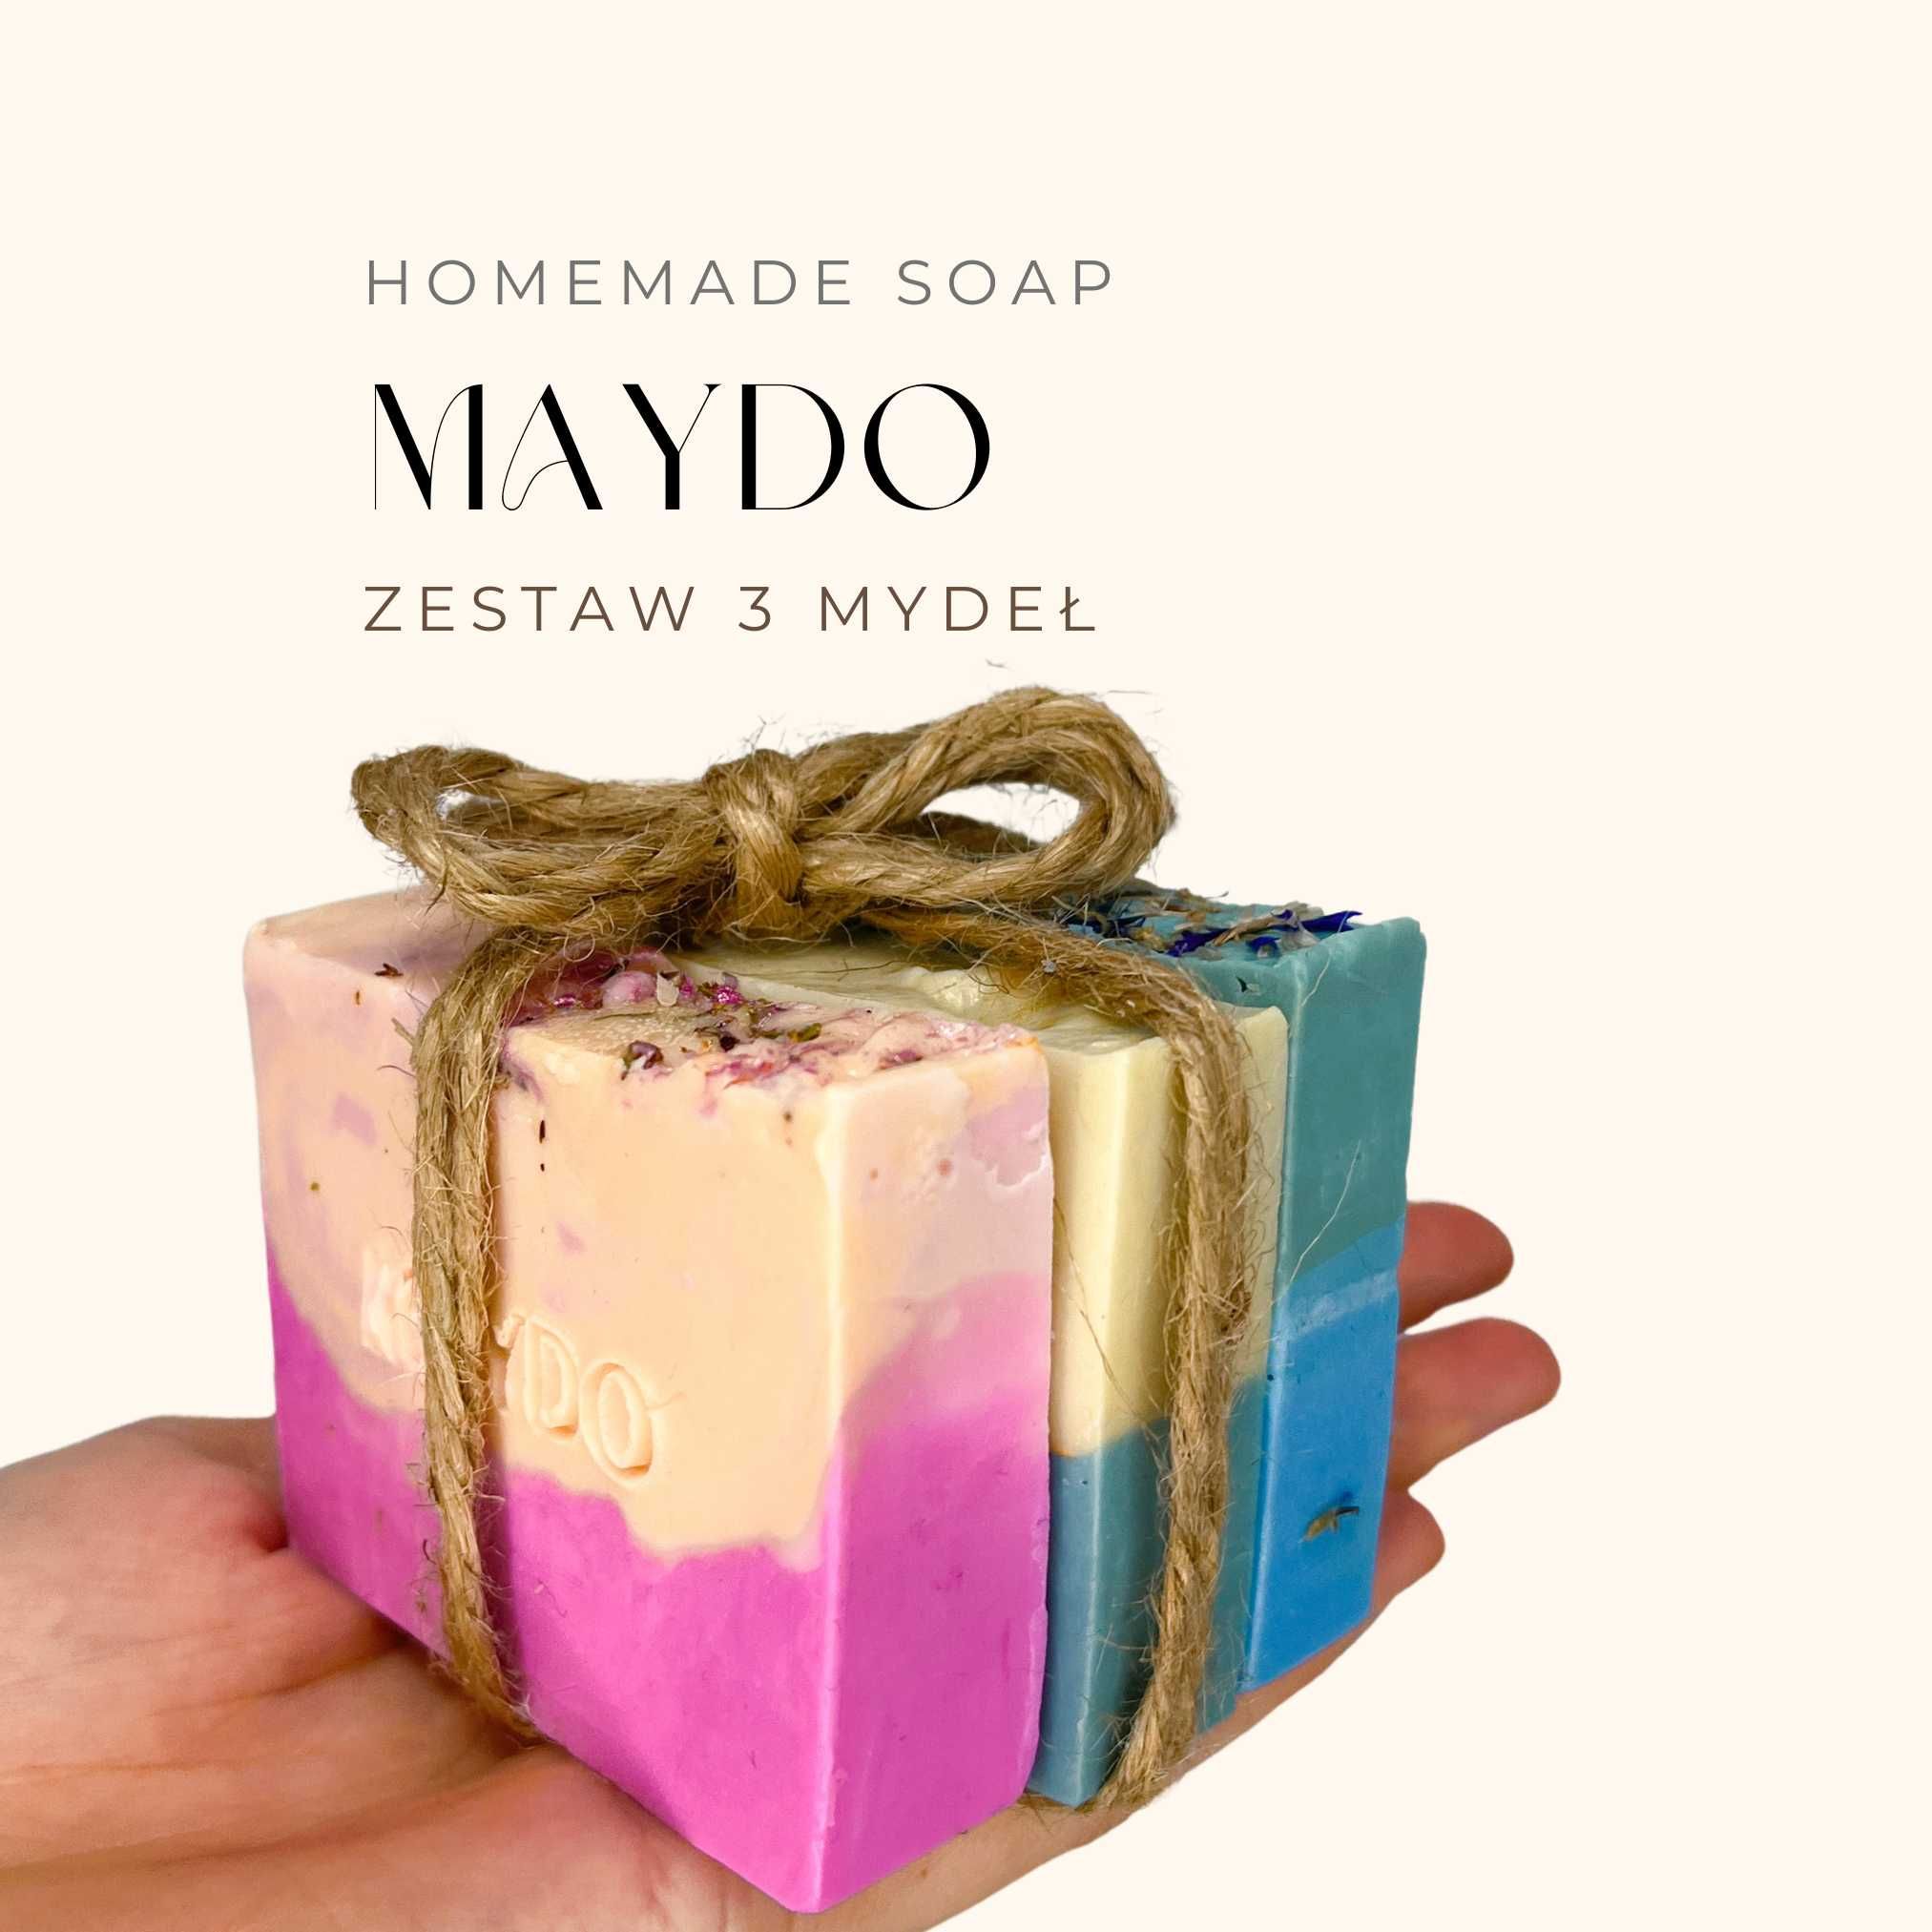 ZESTAW 3 mydeł handmade Maydo SPA